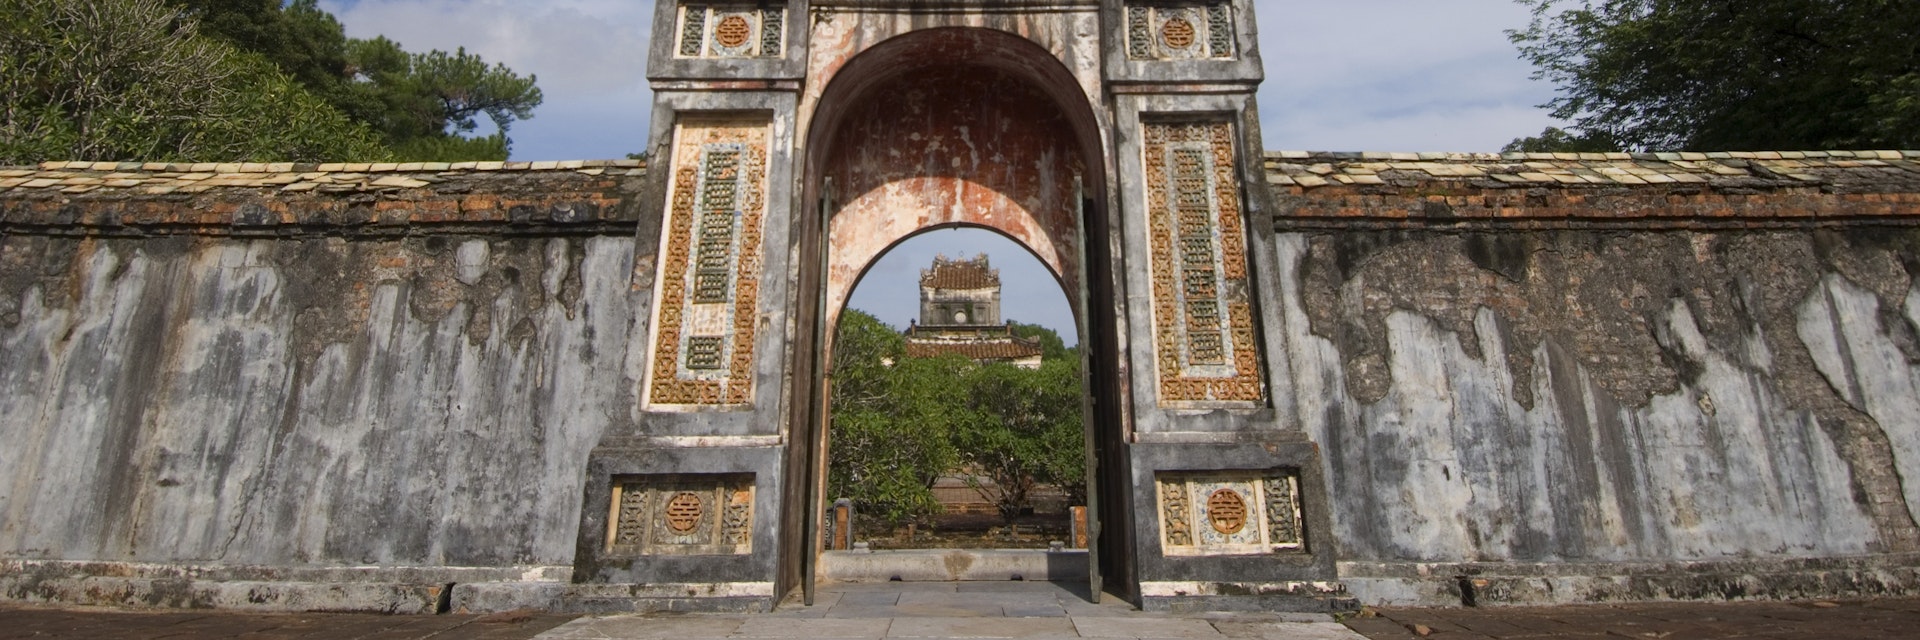 VIETNAM - 2006/09/27: Vietnam, Hue, Tomb Of King Tu Duc, Gate. (Photo by Wolfgang Kaehler/LightRocket via Getty Images)